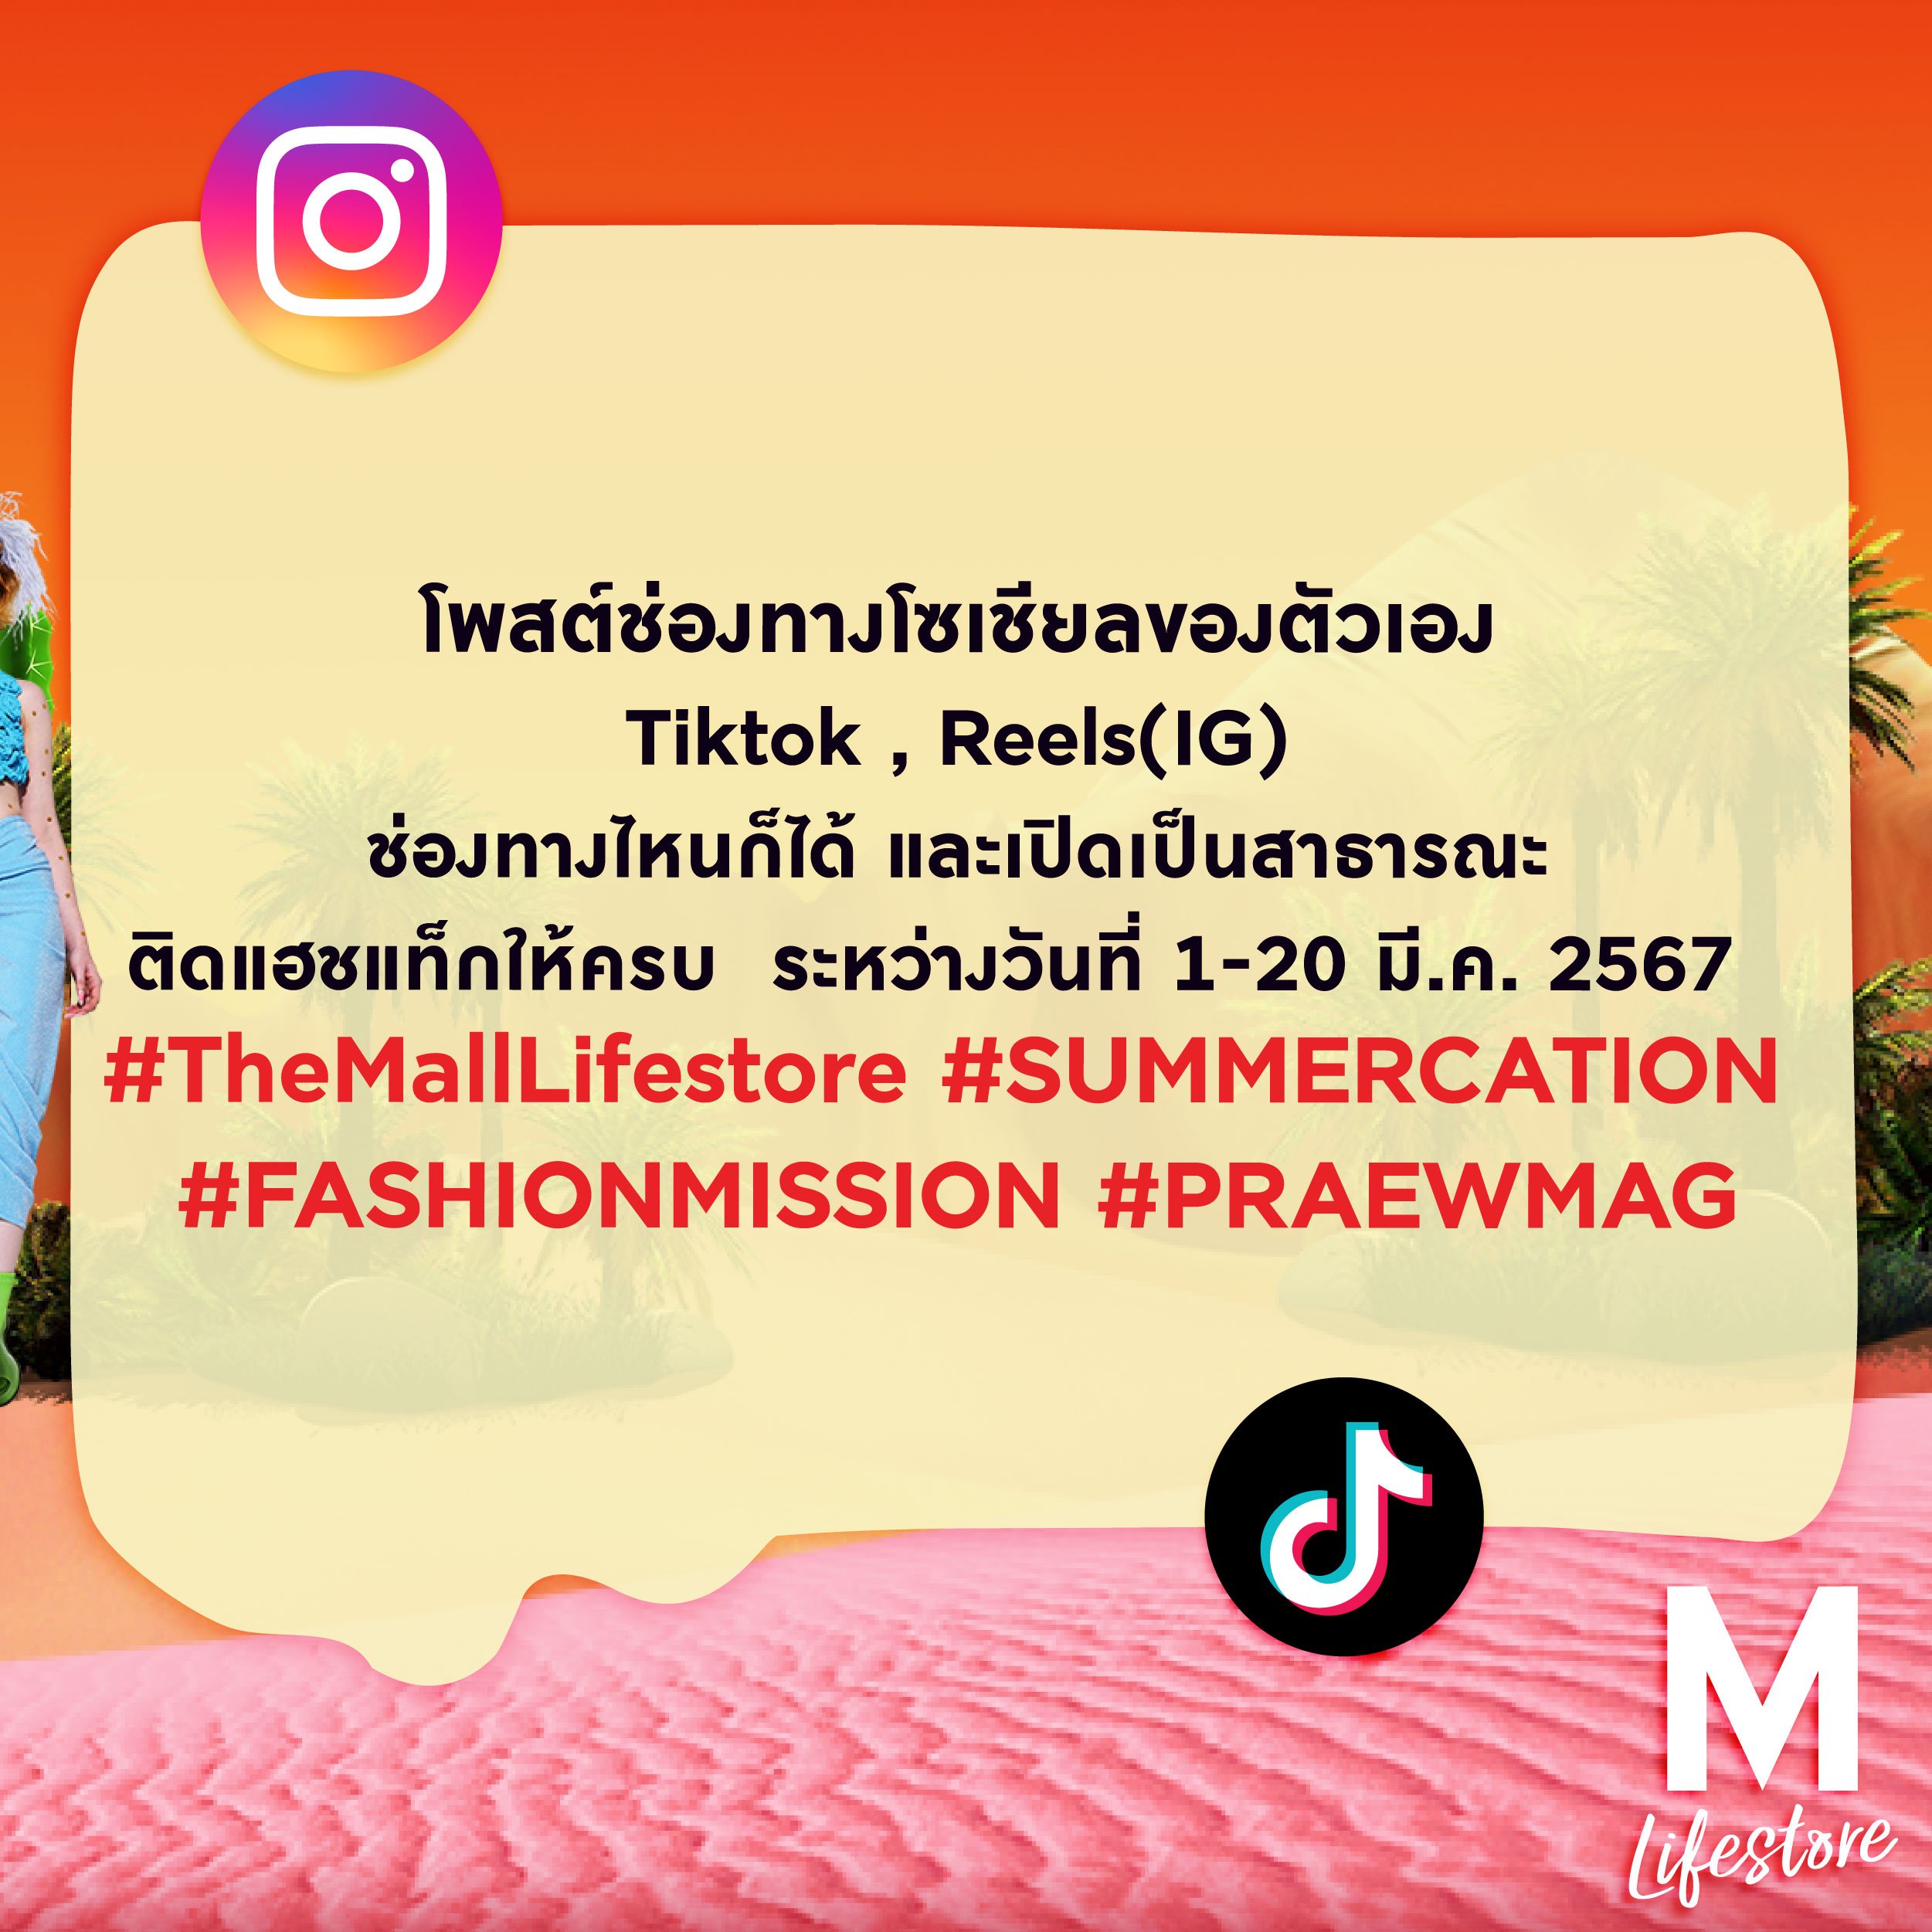 awfb_pr_fashion-04